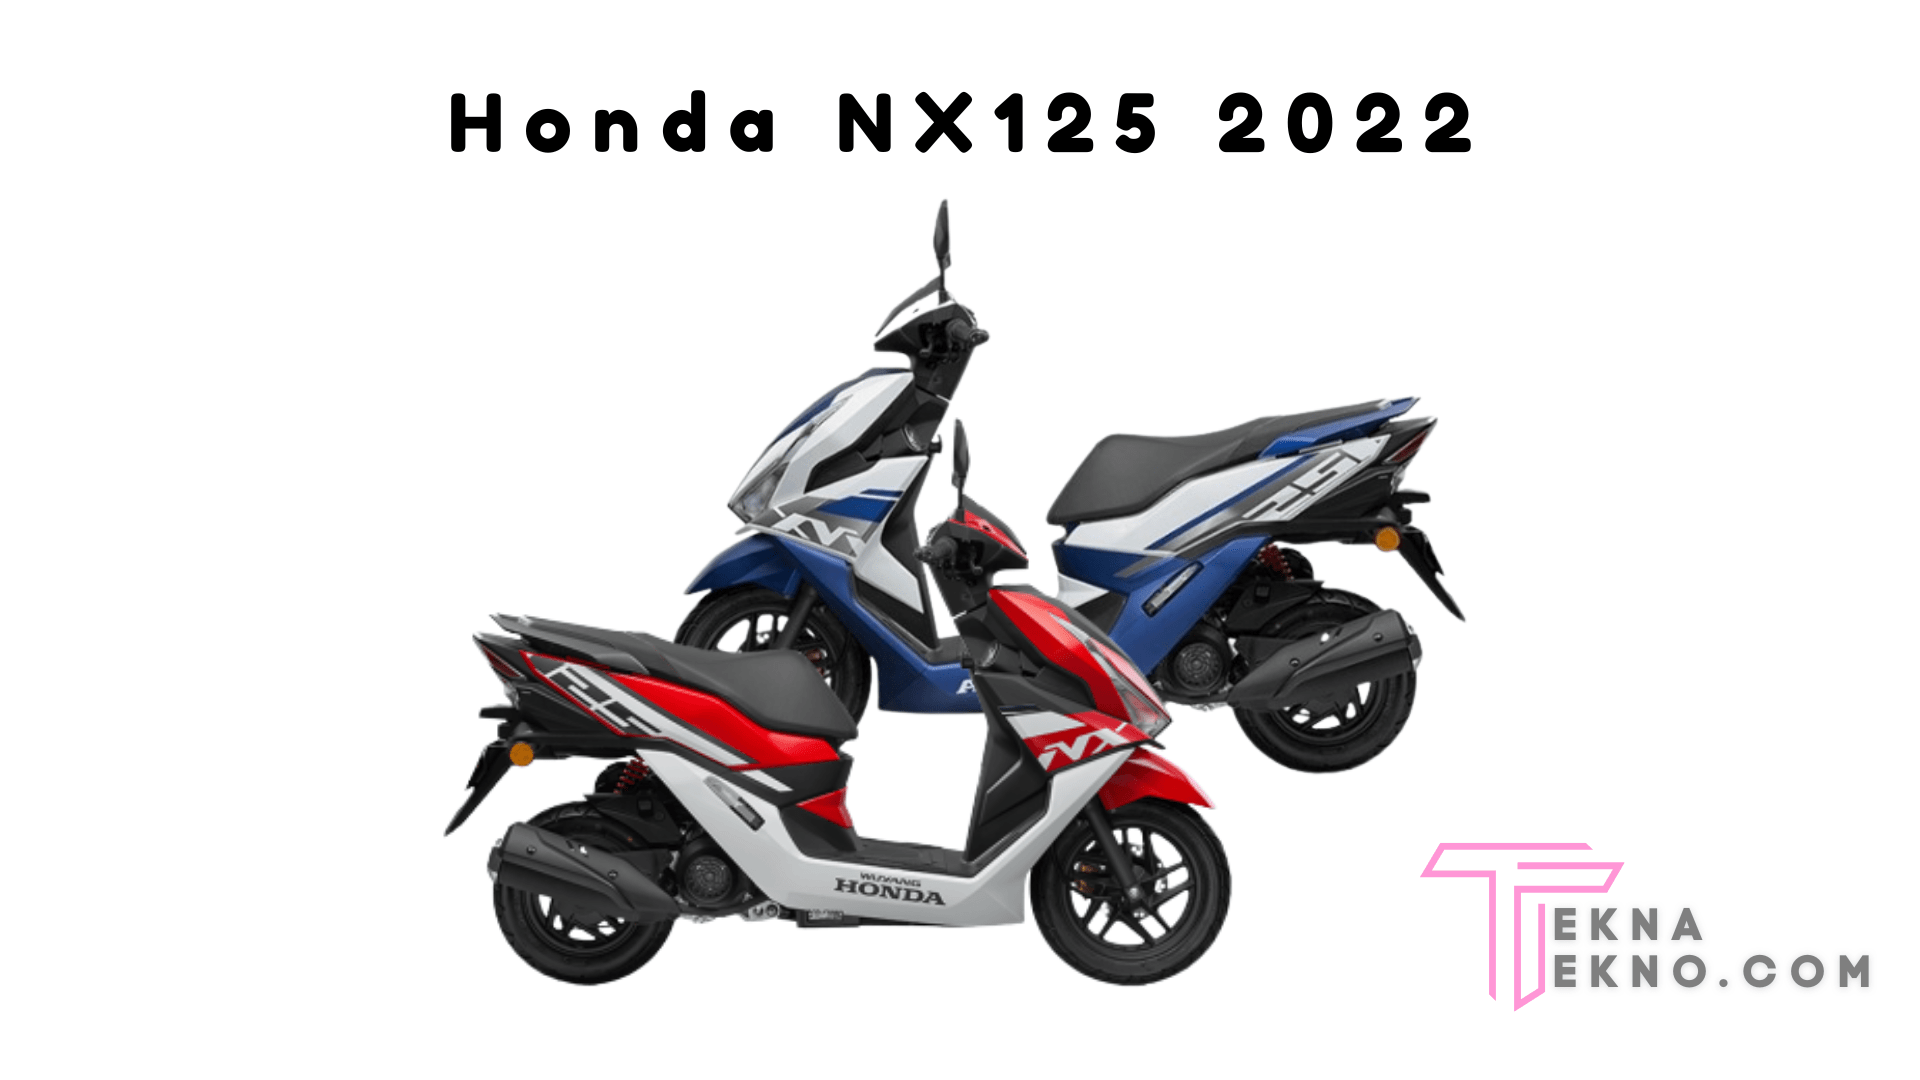 Fitur dan Mesin Honda NX125 2022